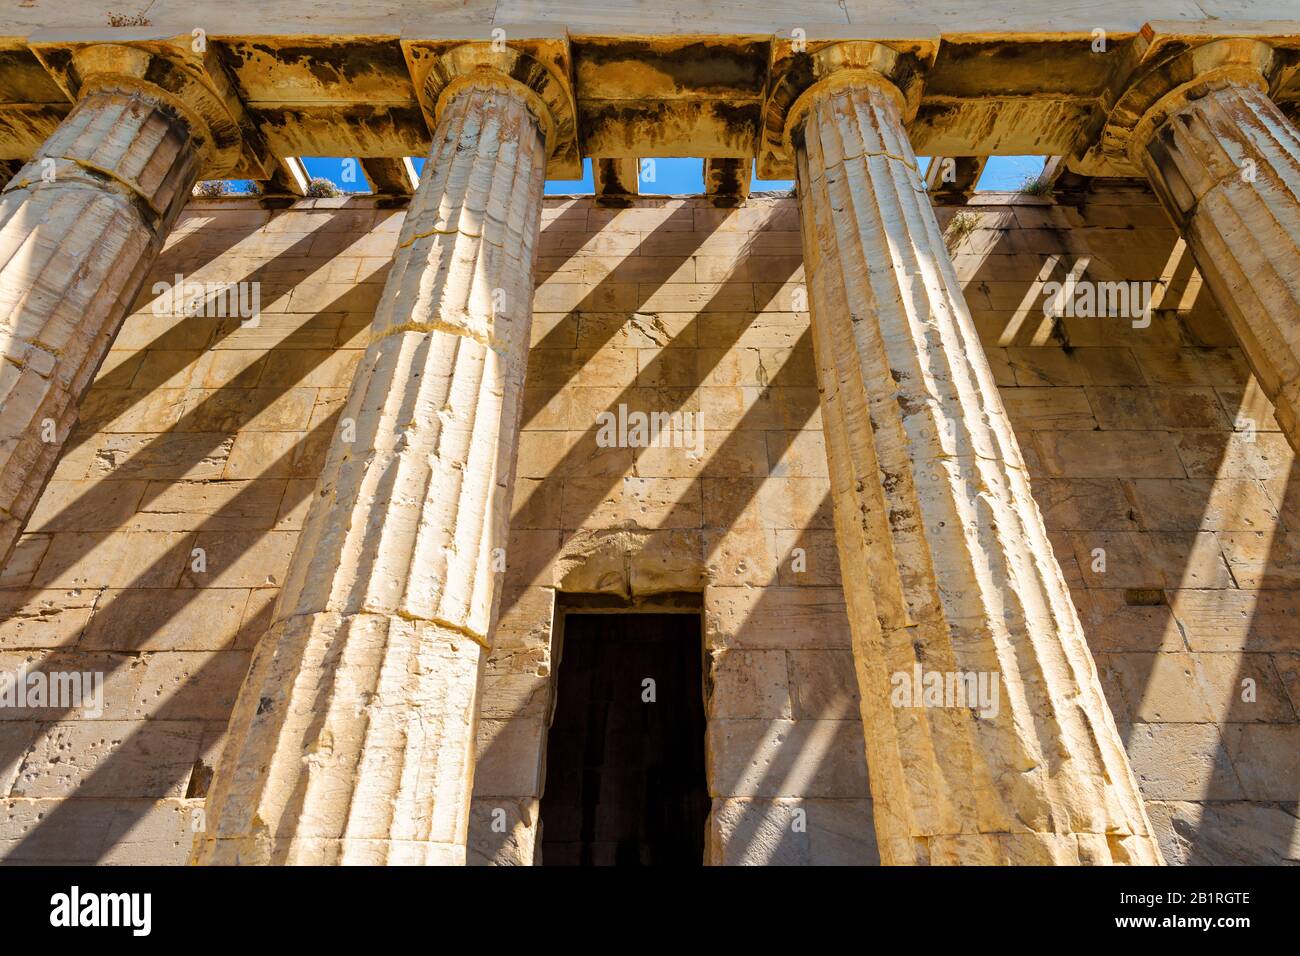 Nahaufnahme des Tempels von Hephaestus, Athen, Griechenland. Es ist ein altes berühmtes Wahrzeichen Athens. Altgriechisches Denkmal mit dorischen Säulen im Athener Zentrum. Stockfoto